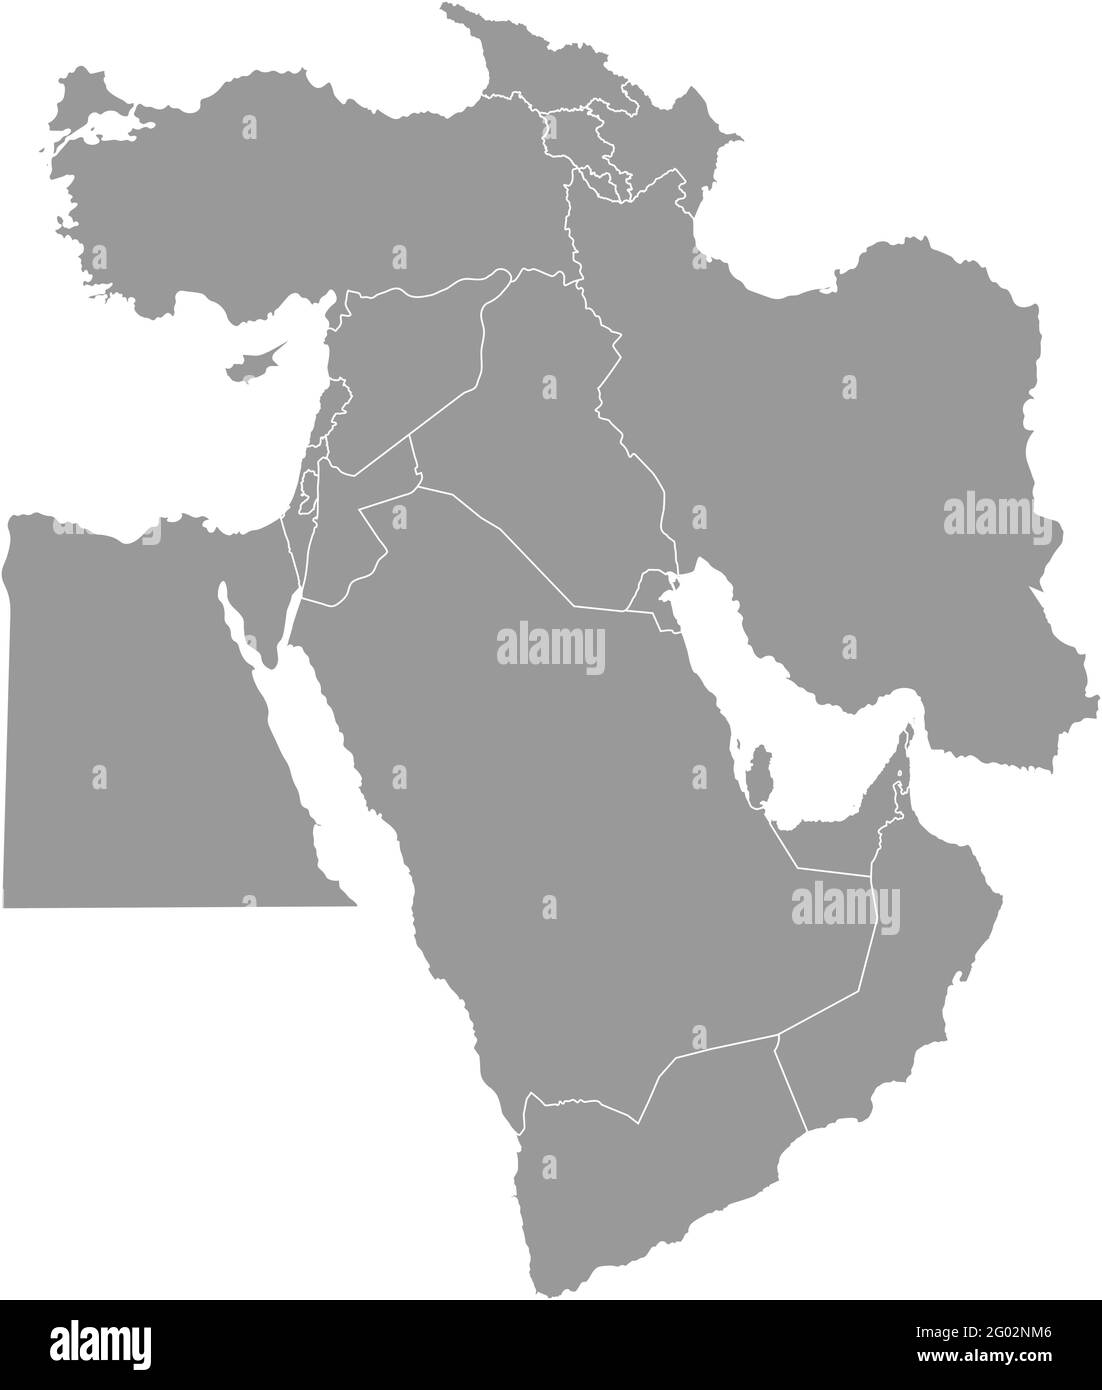 Illustration vectorielle avec carte simplifiée des pays asiatiques. Moyen-Orient. États frontières de la Turquie, de la Géorgie, de l'Arménie, des Émirats arabes Unis, de l'Arabie saoudite Illustration de Vecteur